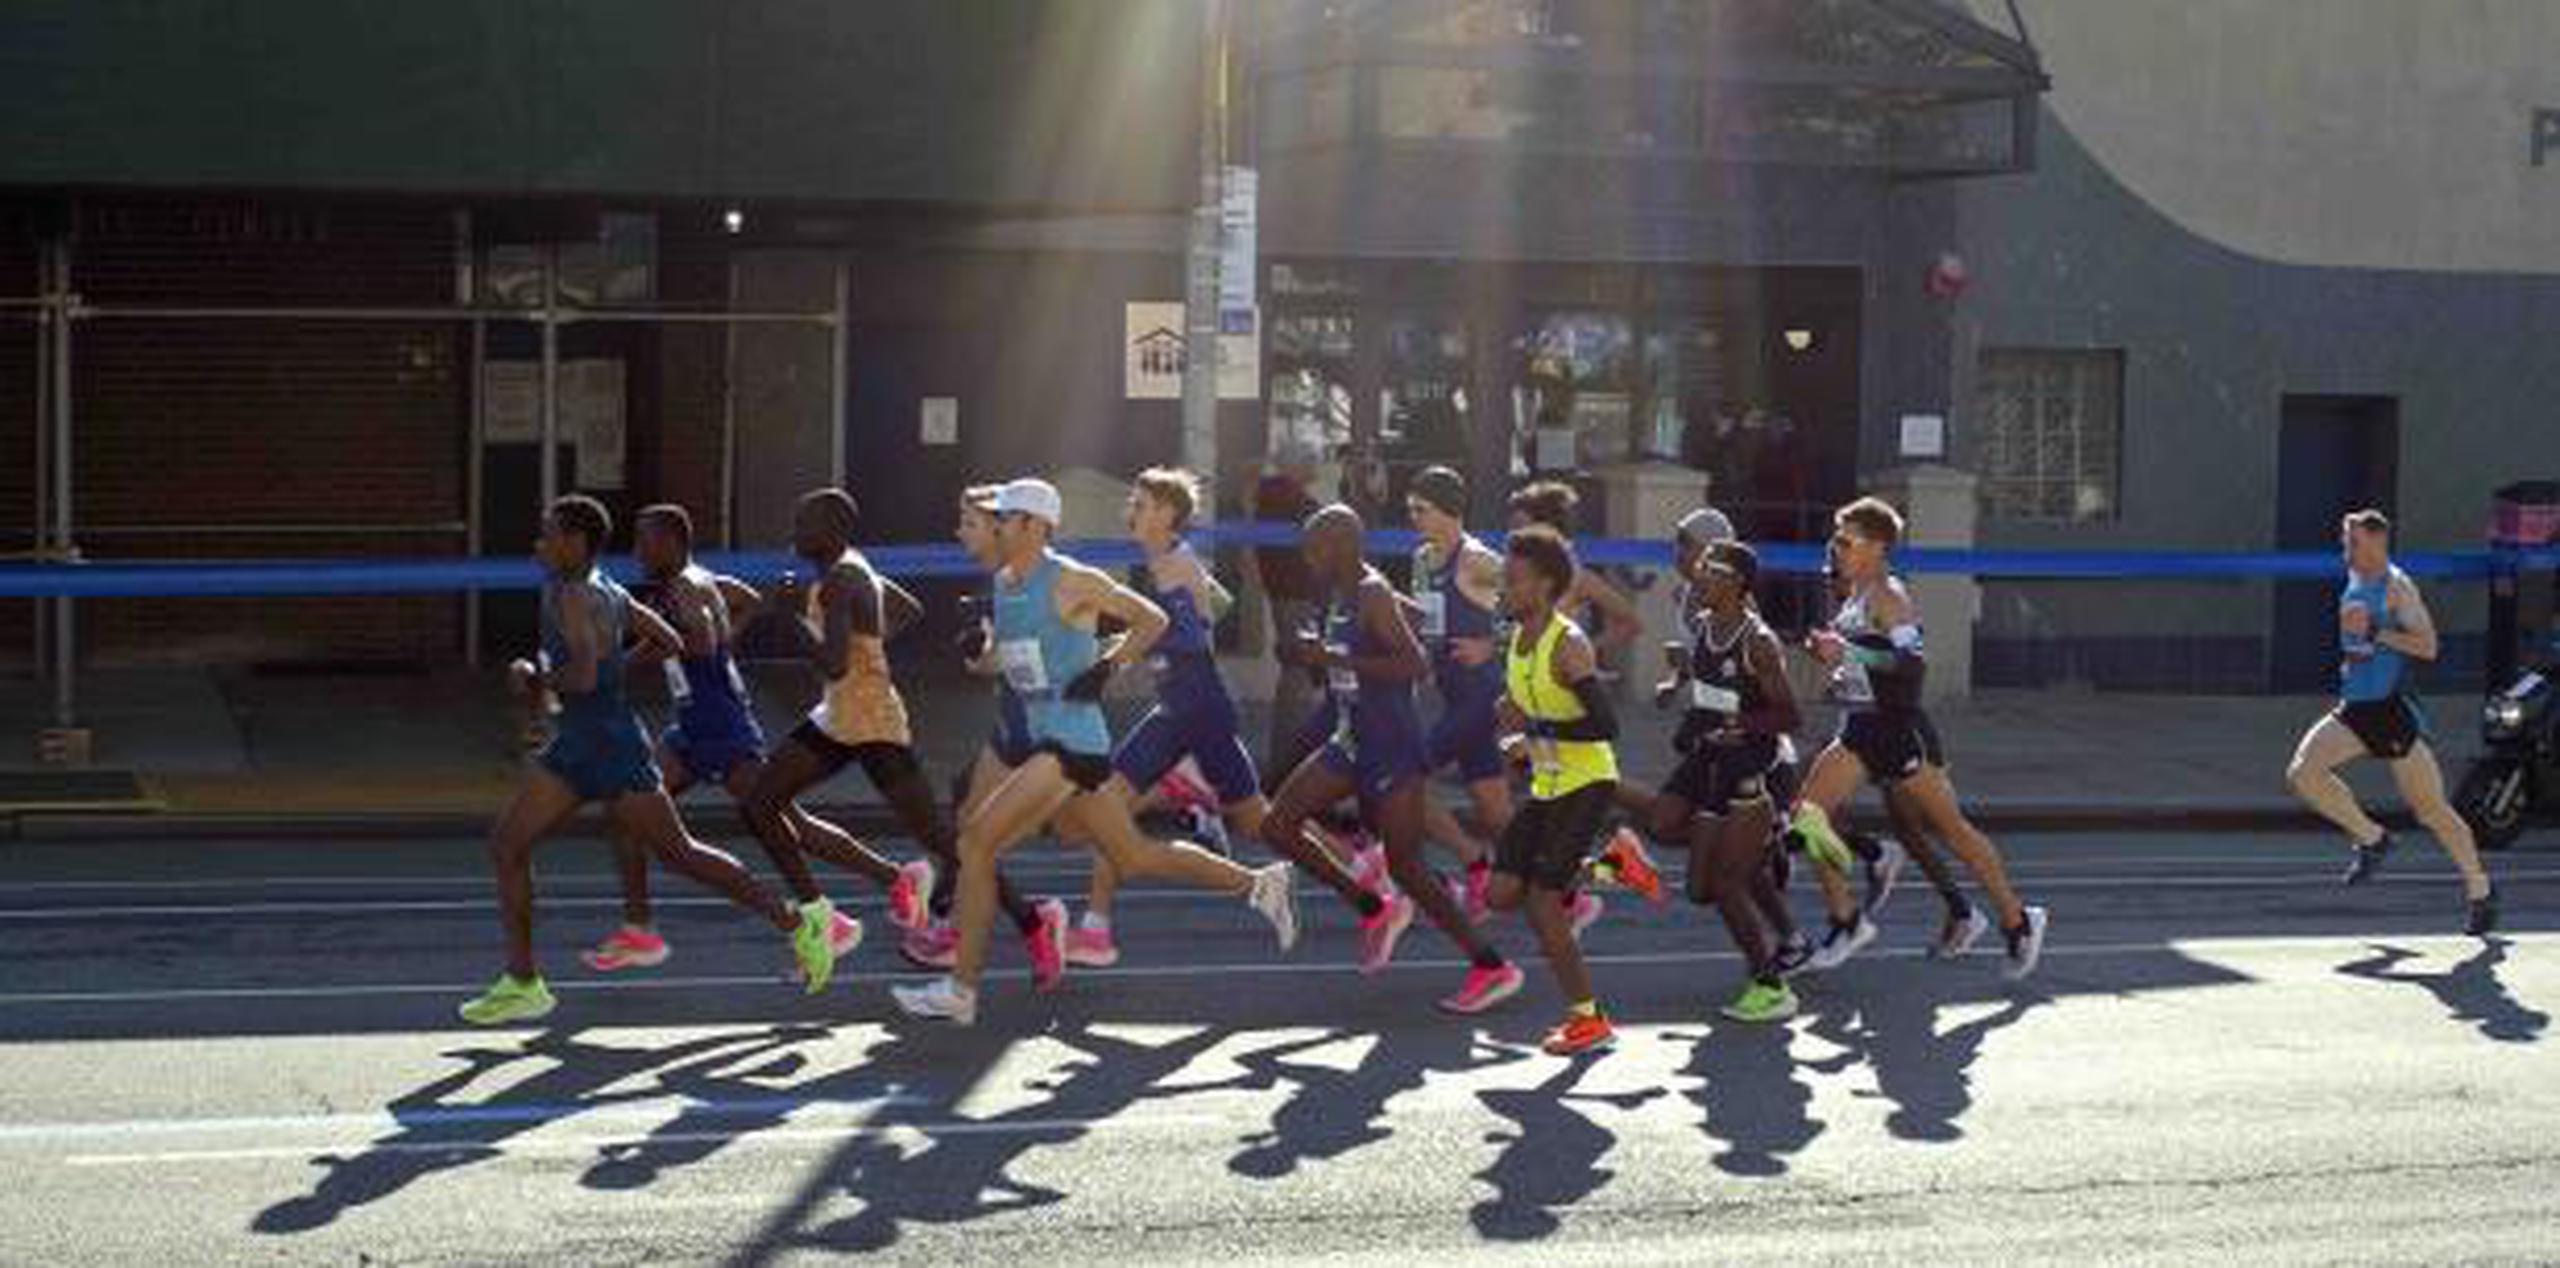 Los organizadores esperaban que unos 52,000 corredores completasen el maratón, luego que el año pasado un récord mundial de 52,813 cruzaron la meta. (AP)